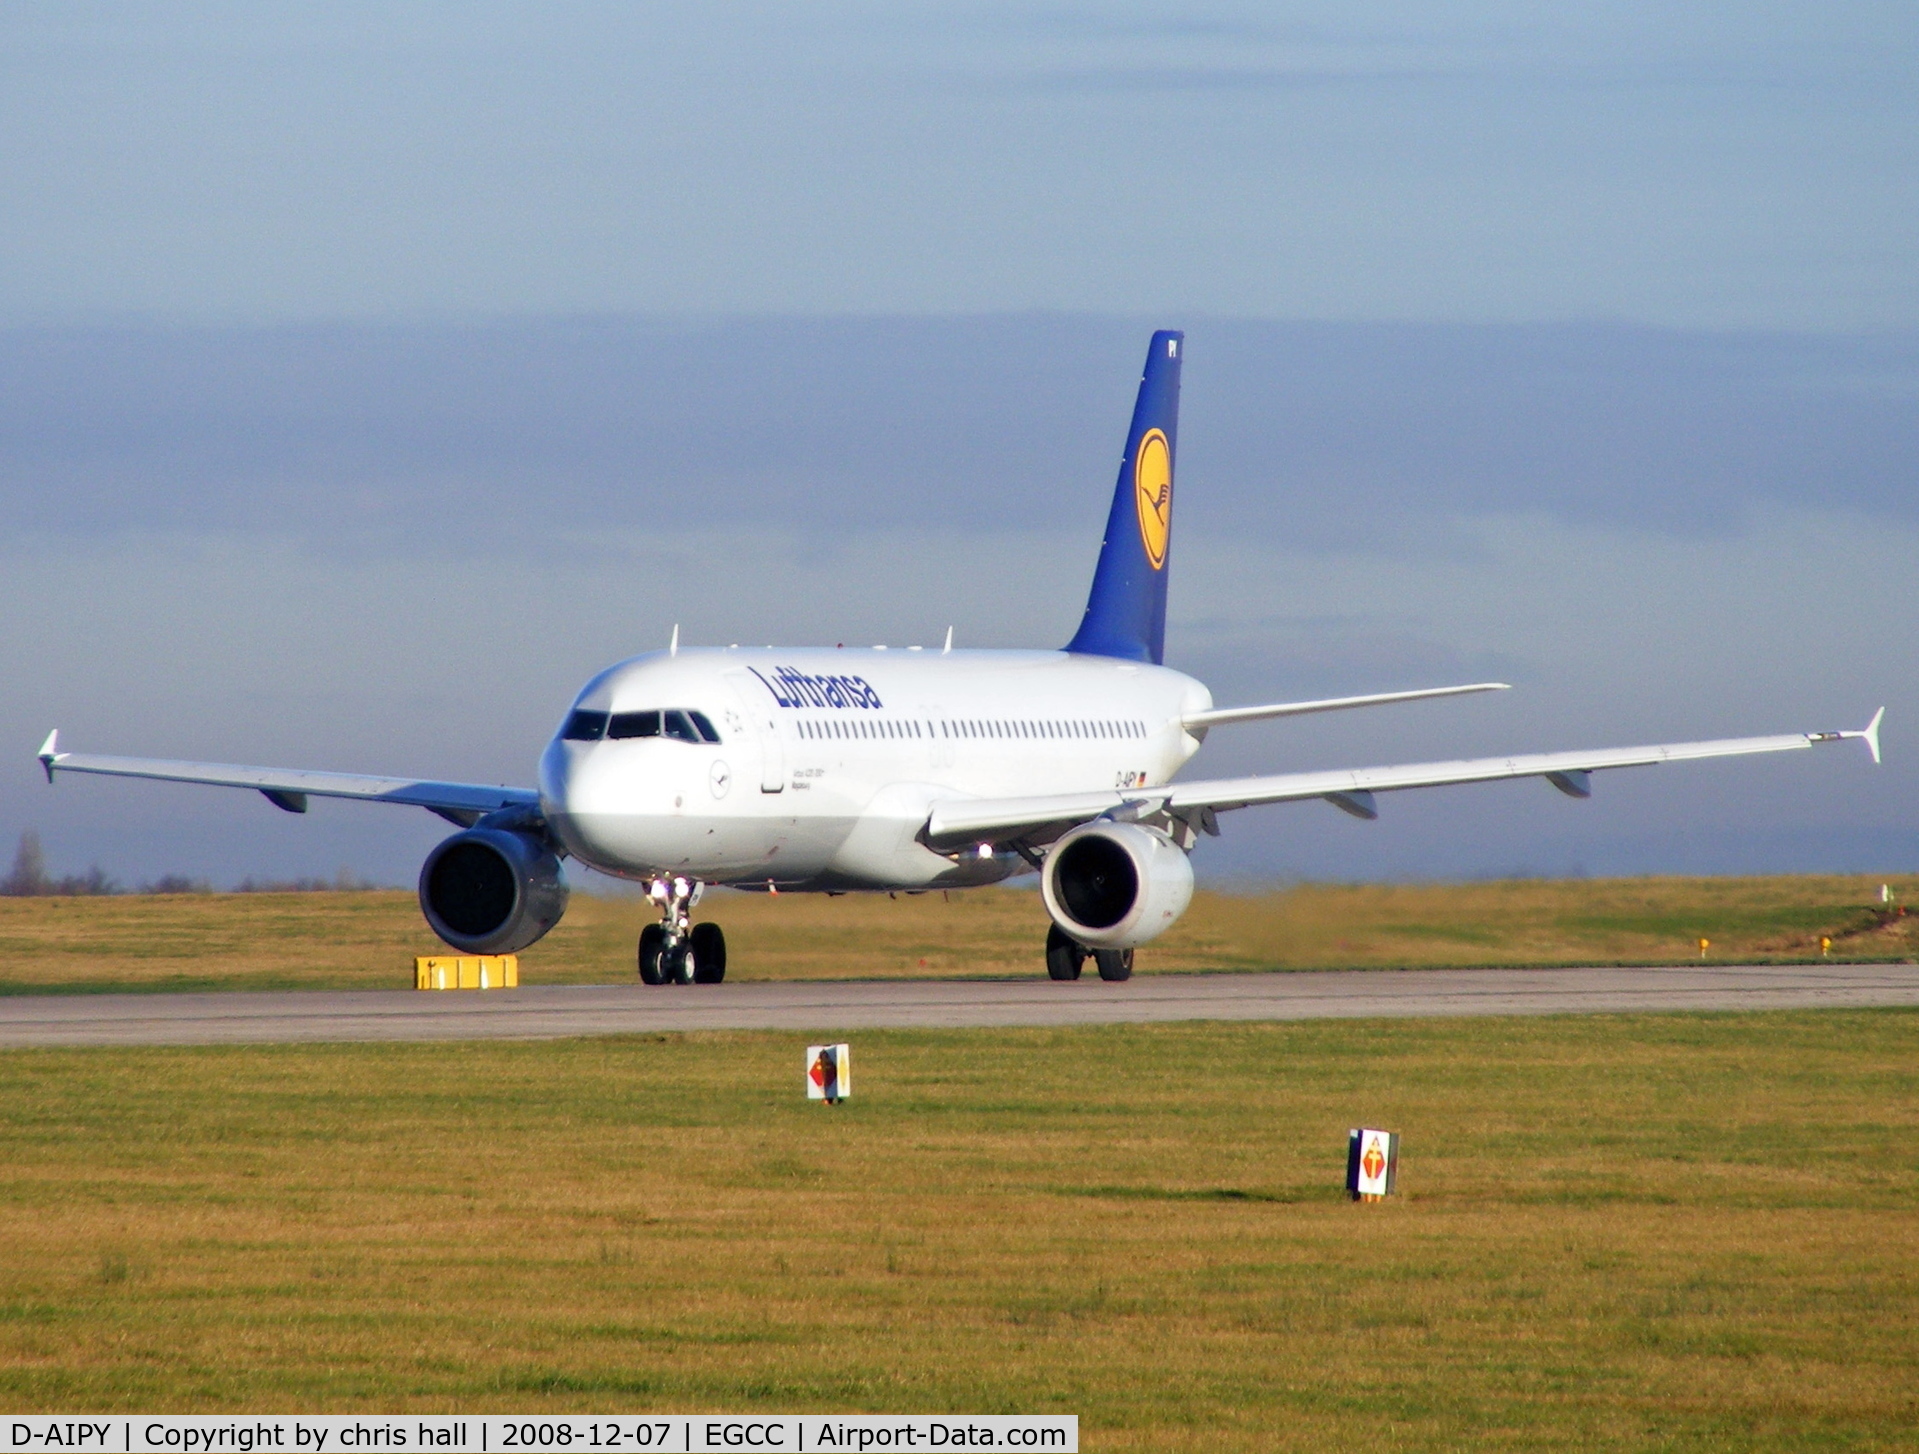 D-AIPY, 1991 Airbus A320-211 C/N 161, Lufthansa